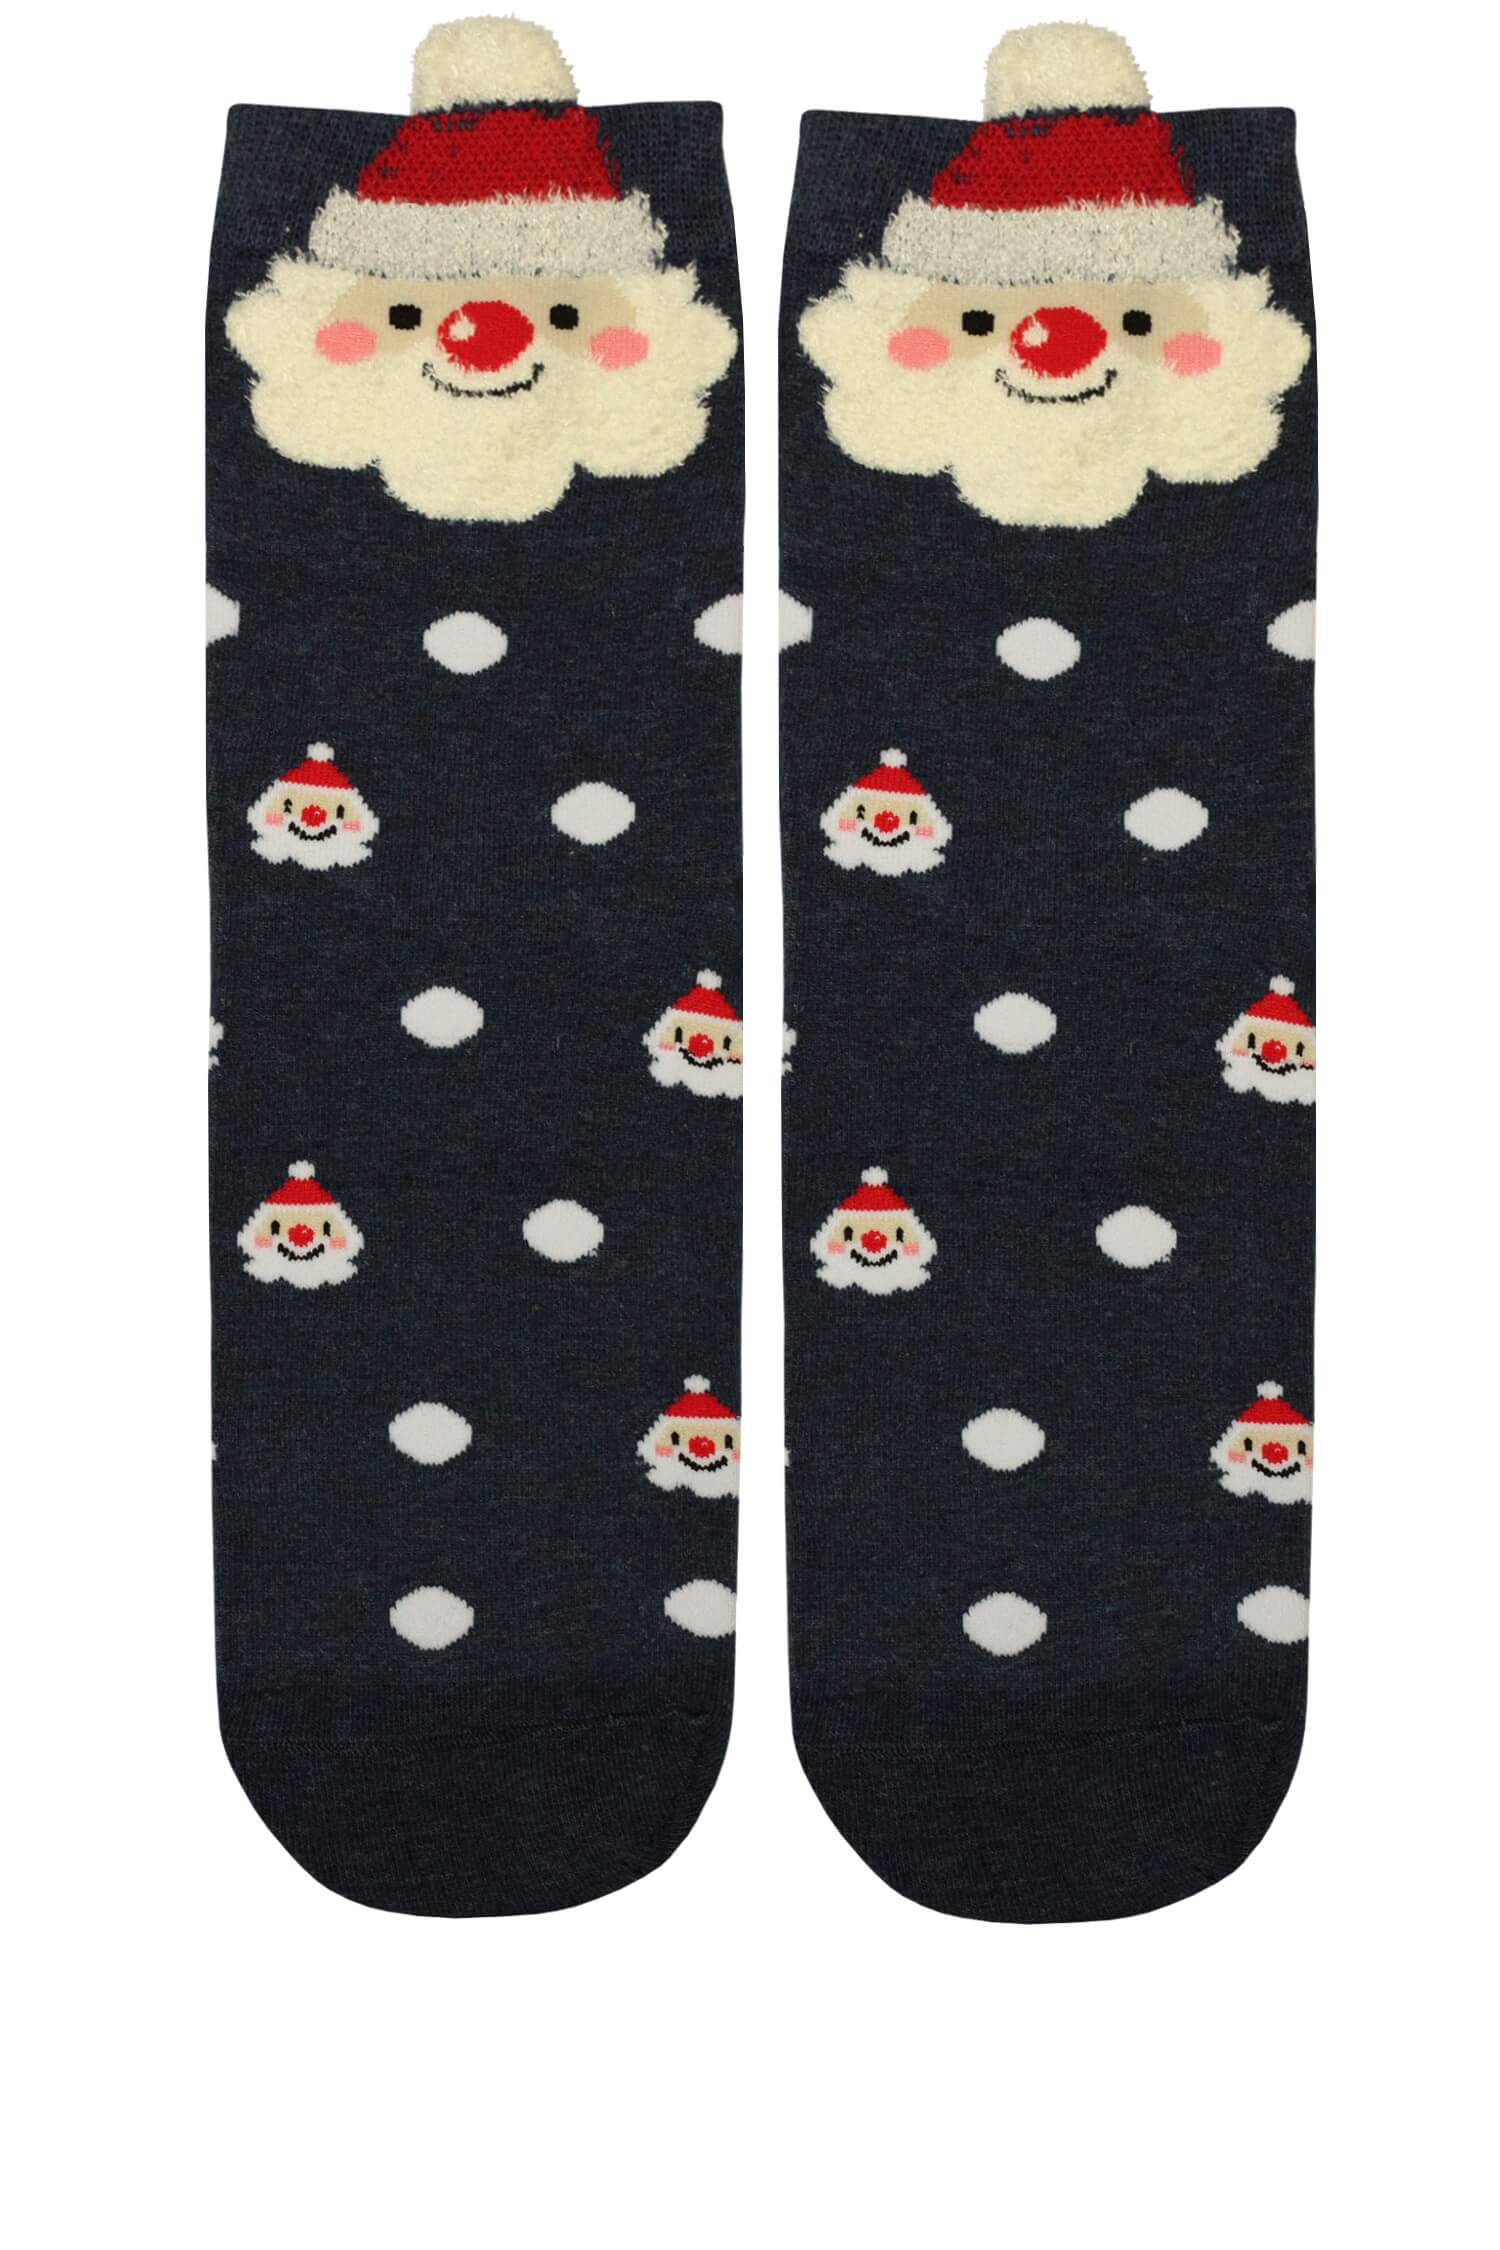 Vánoční vysoké ponožky dámské Santa 35-38 tmavě modrá